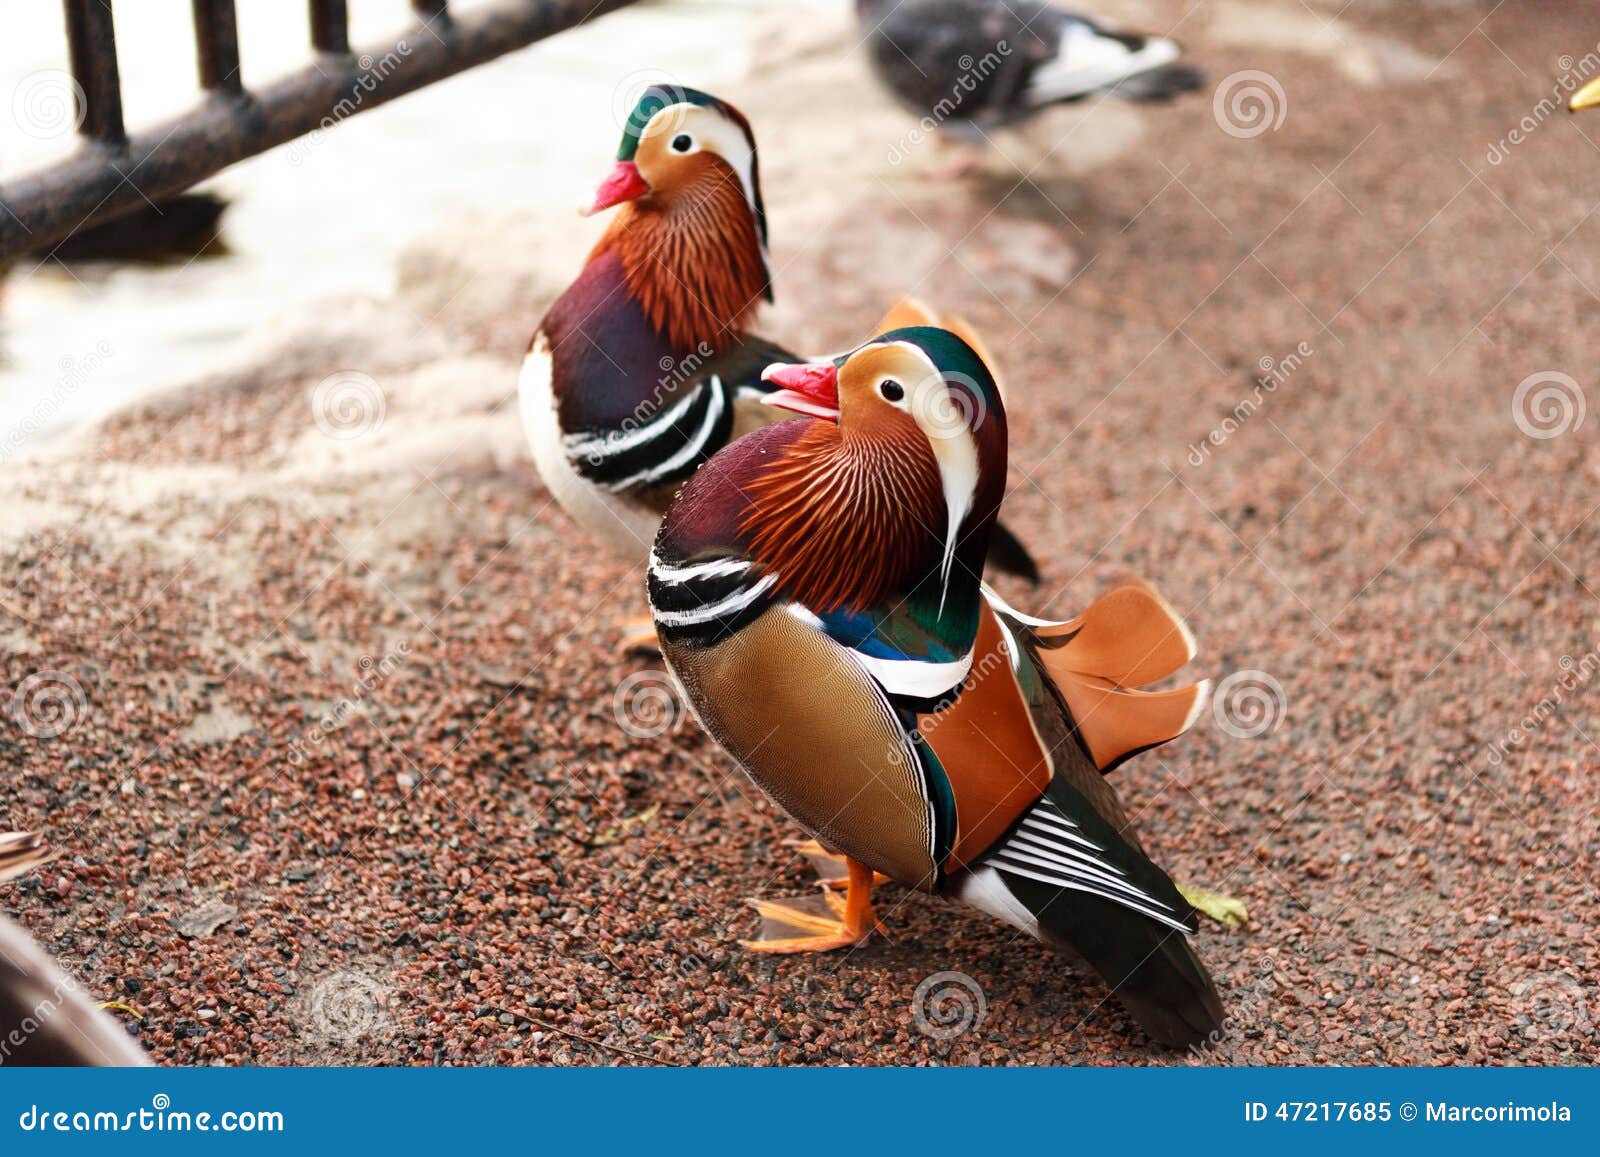 mandarina ducks posing